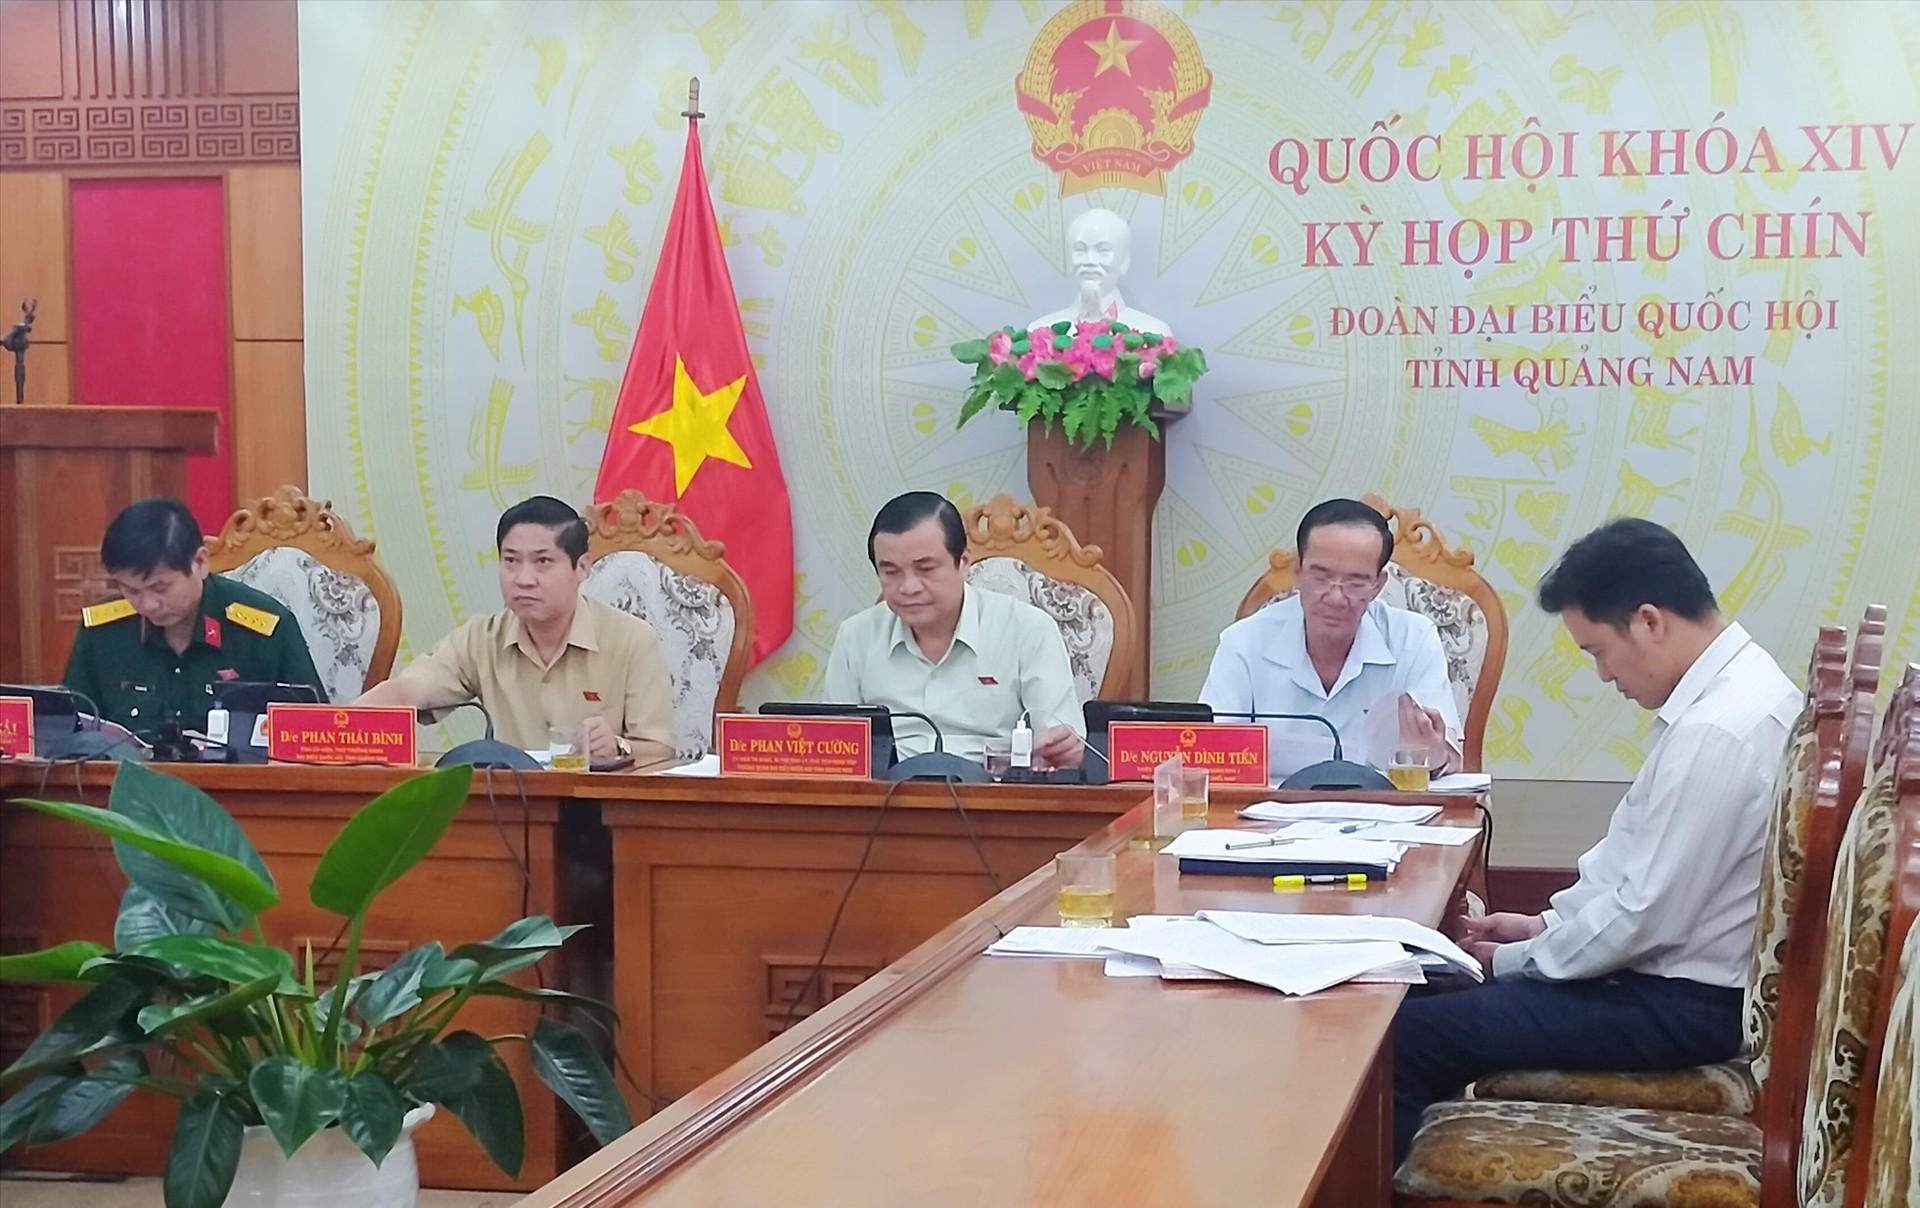 Các đại biểu Quốc hội tỉnh dự phiên họp tại điểm cầu Quảng Nam. Ảnh: N.Đ